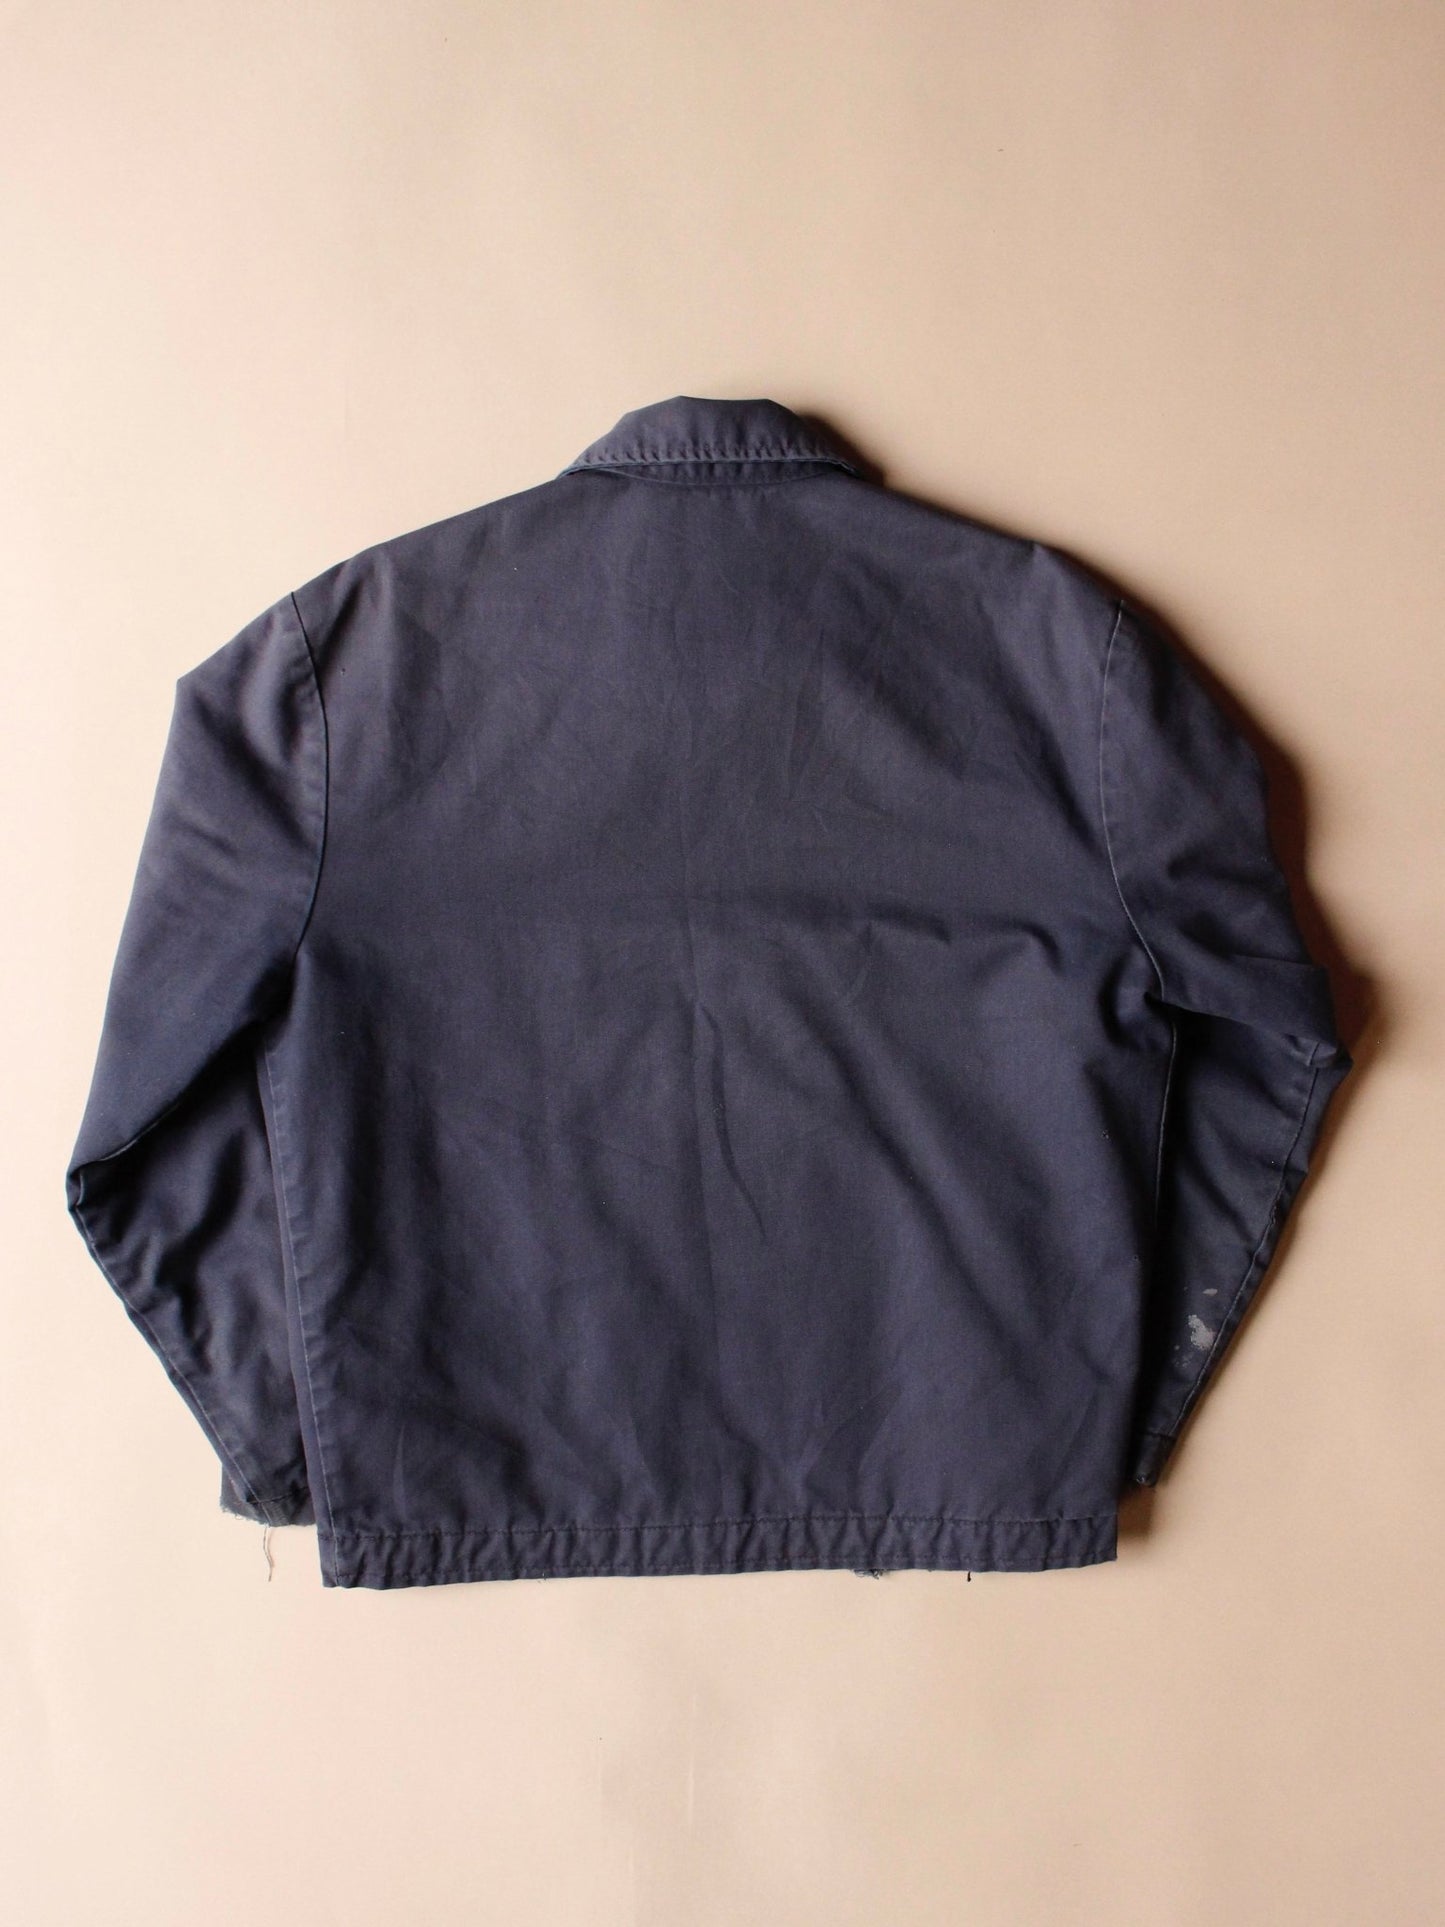 2000s Dickies Workwear Jacket